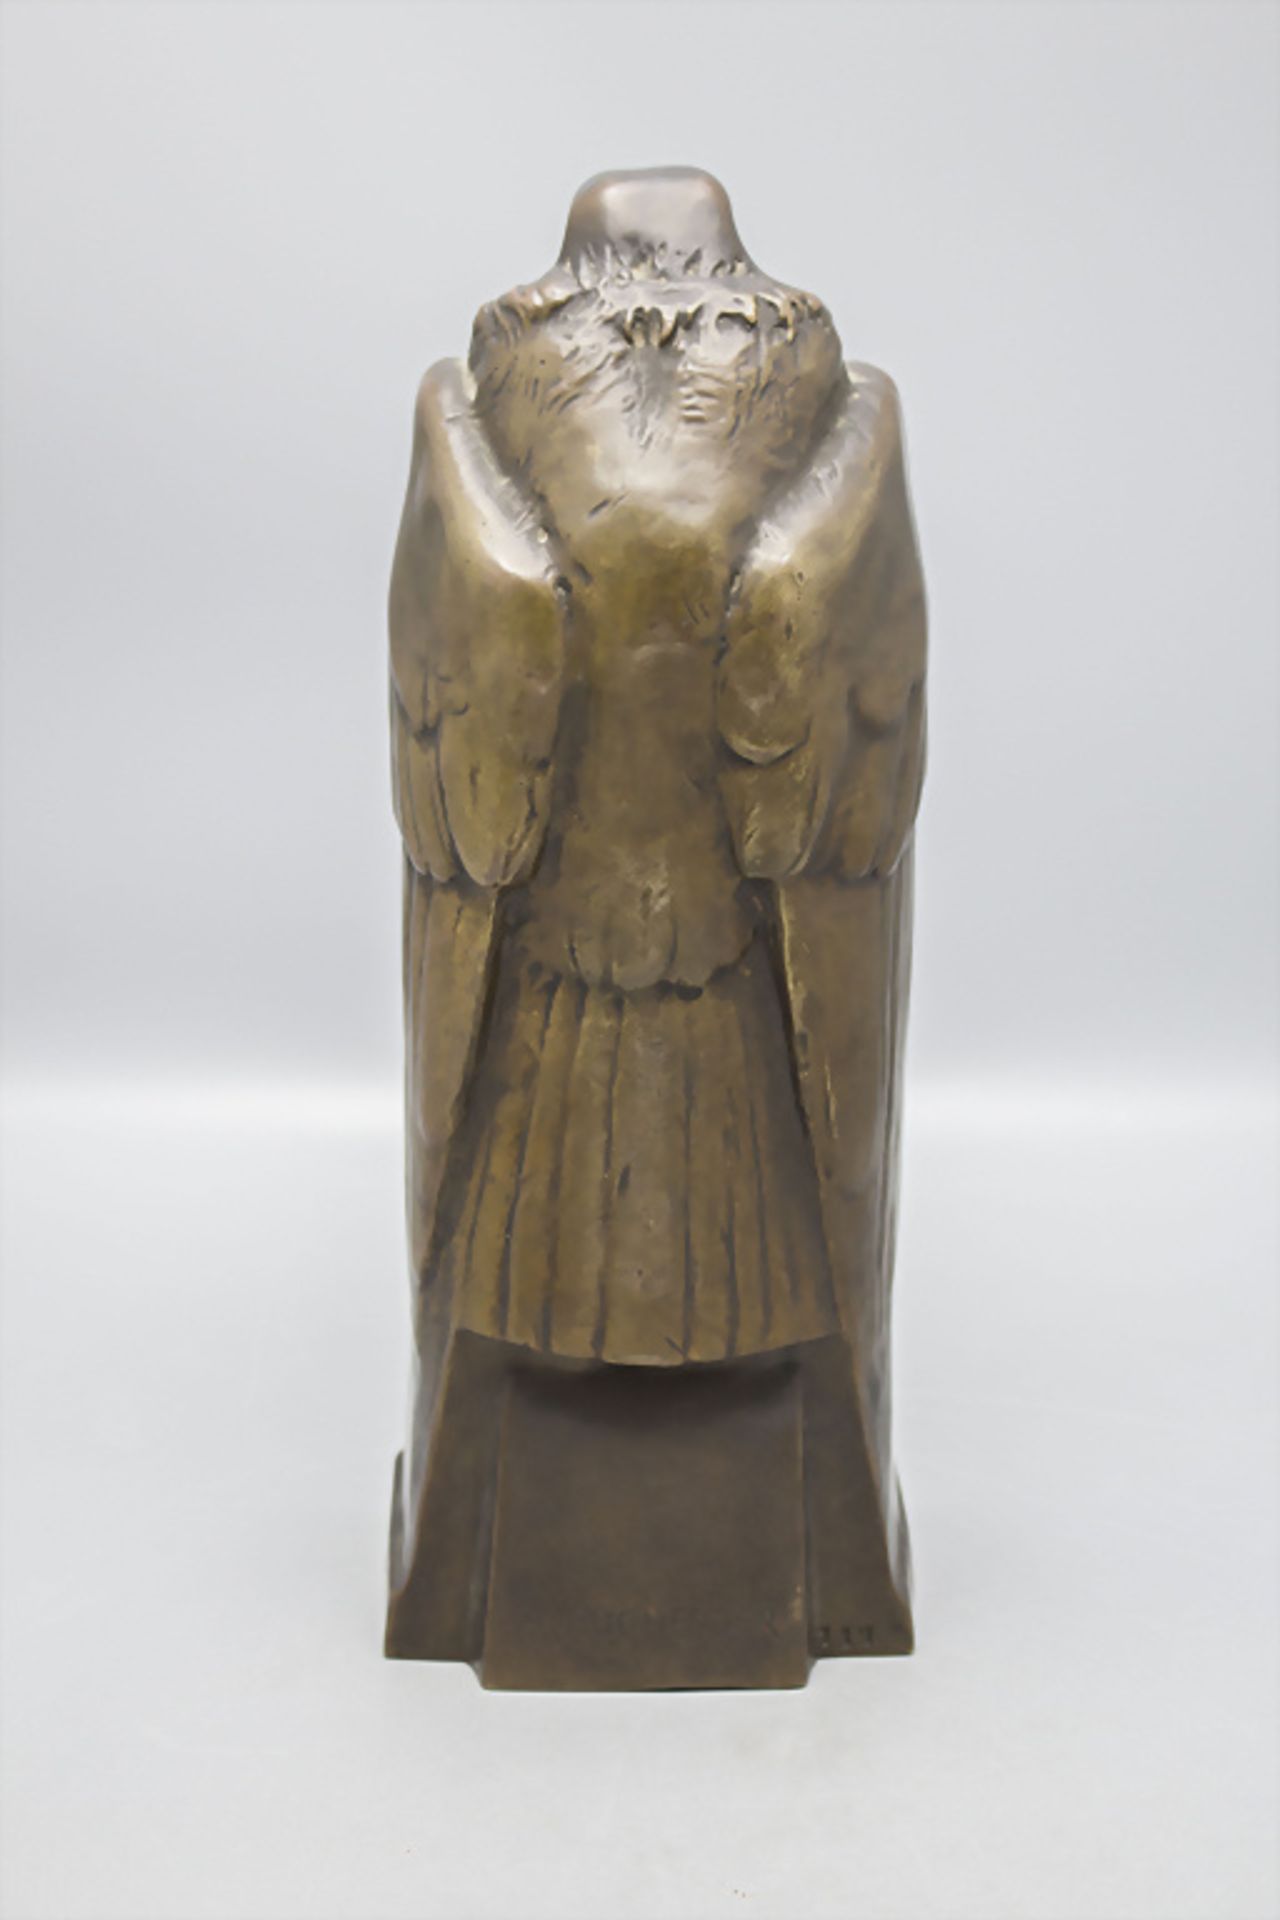 Jugendstil Bronze 'Adler mit Barometer' / An Art Nouveau bronze barometer with an eagle, Anton ... - Image 4 of 8